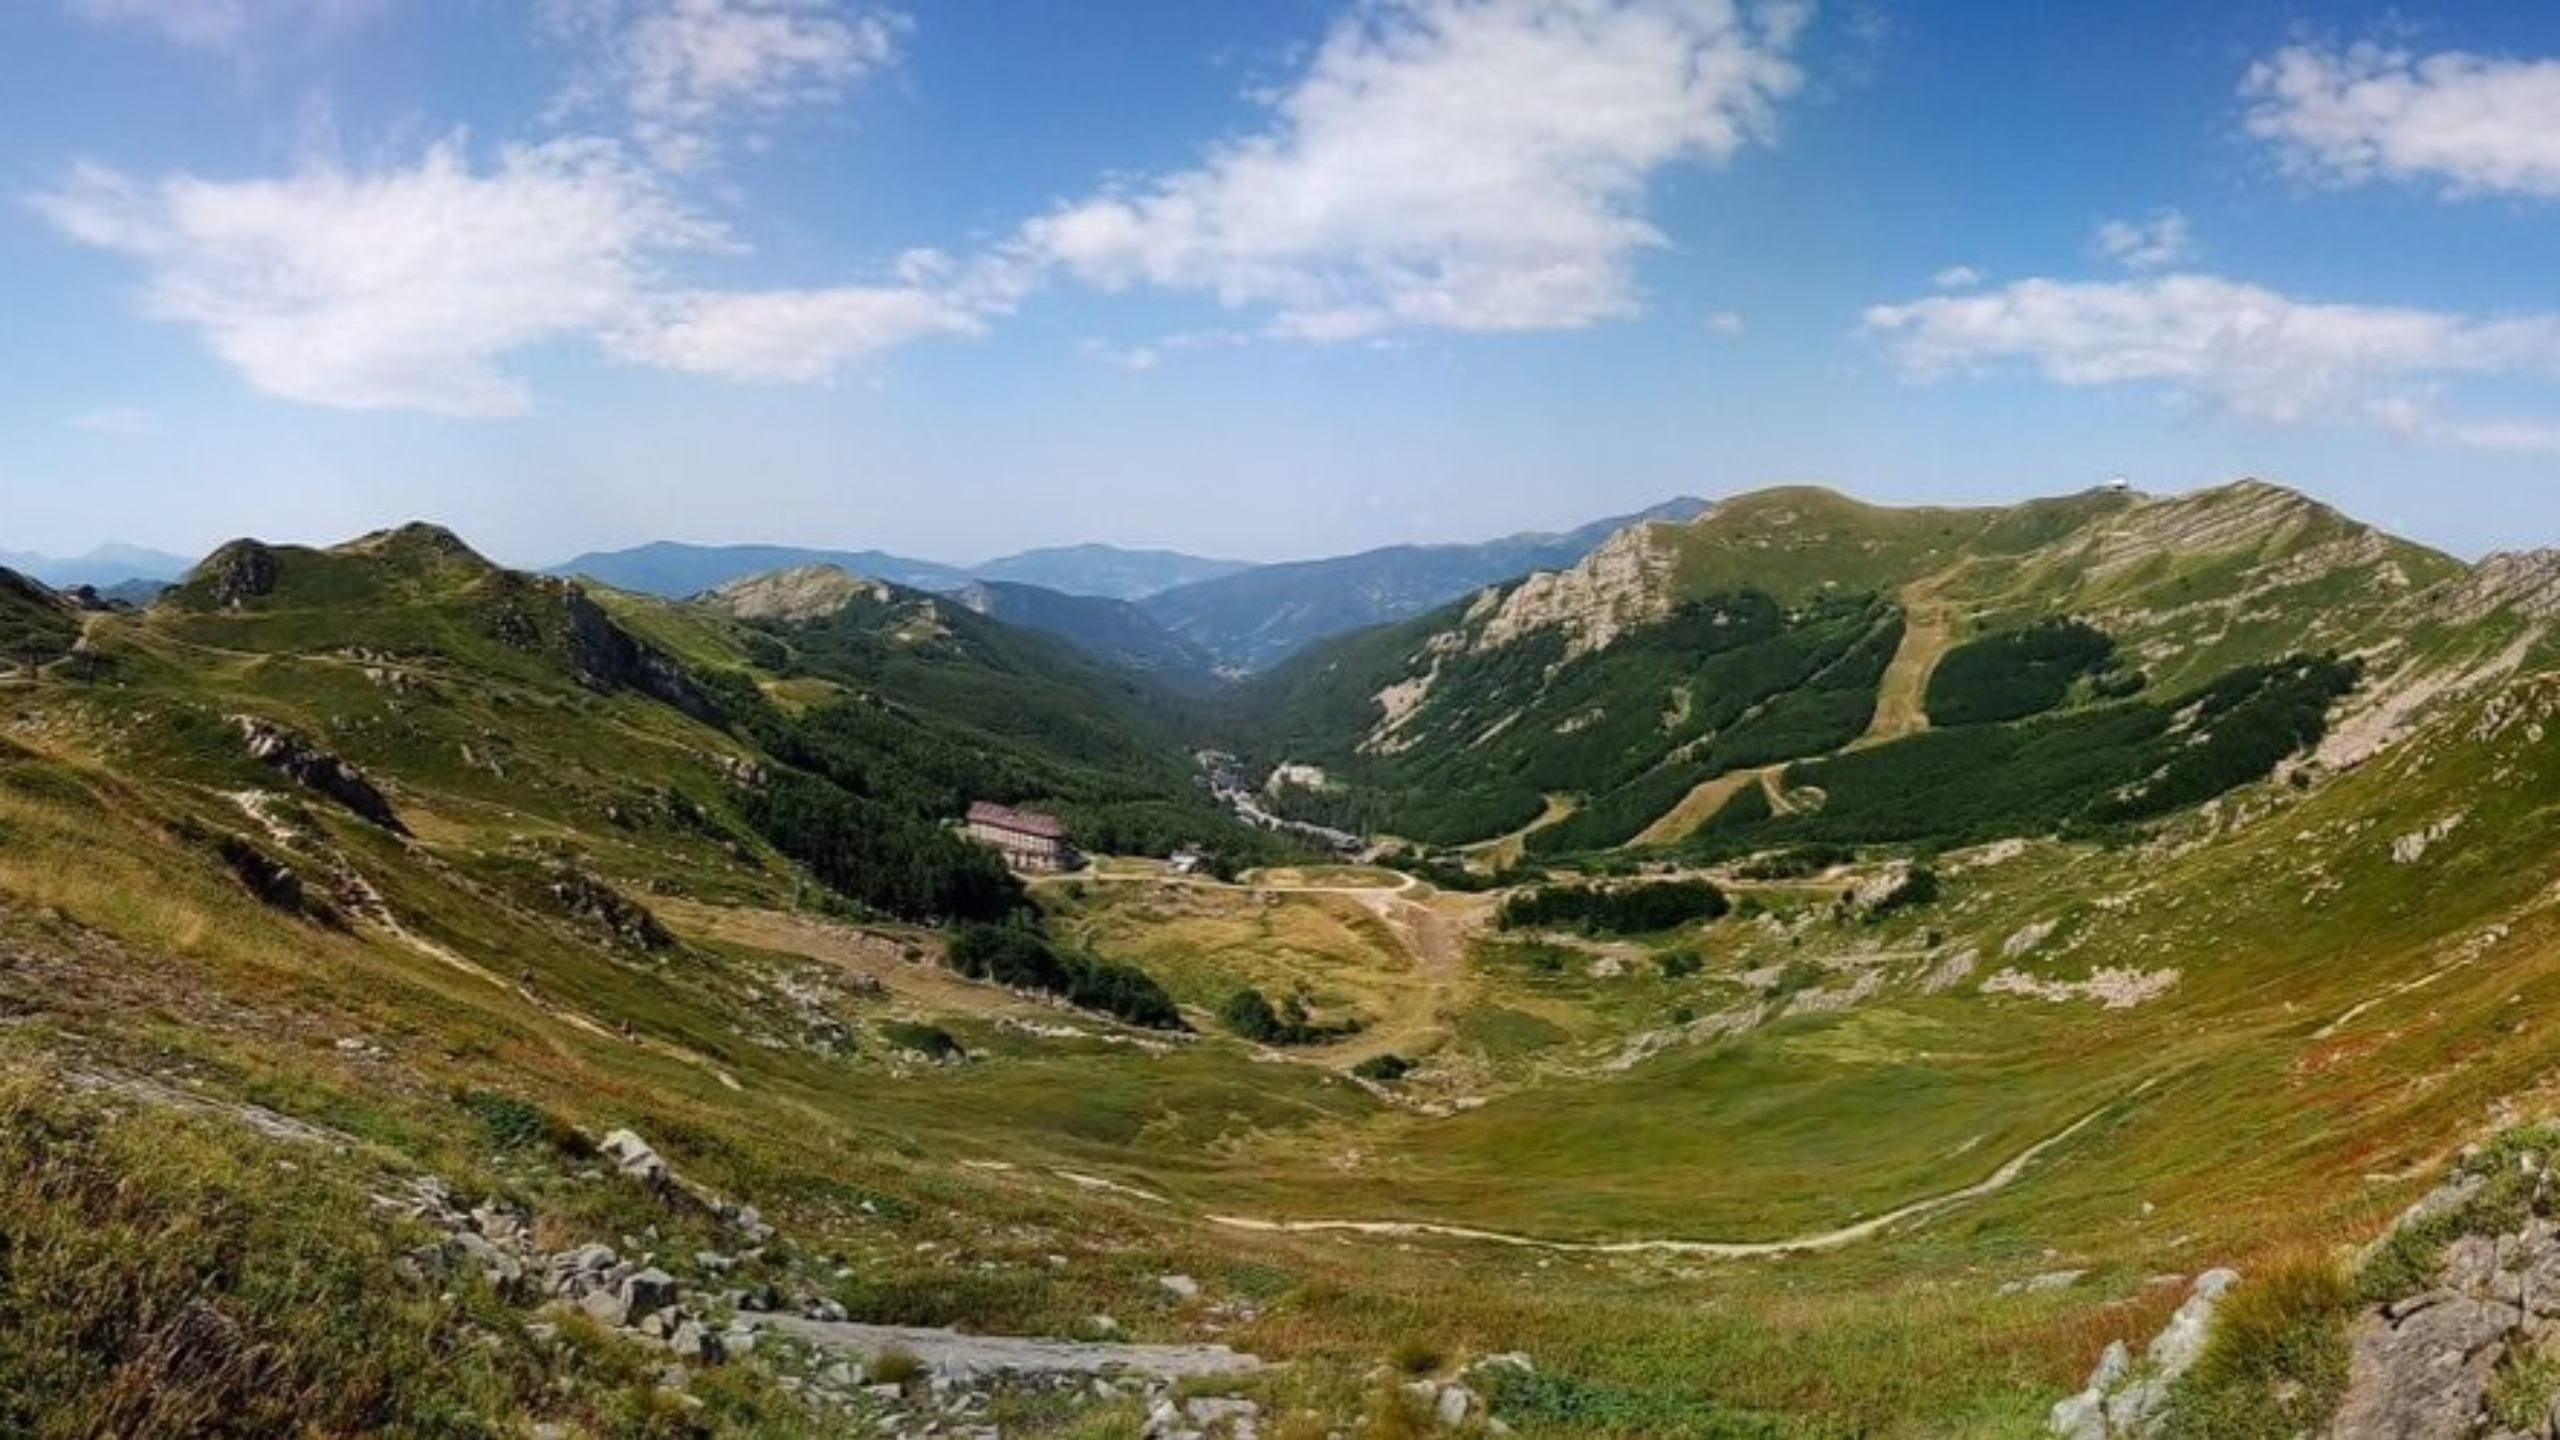 50 milioni stanziati con il Psr per valorizzare le zone montane di Pistoia e Lucca. Saccardi: “Opportunità di crescita e di sviluppo”